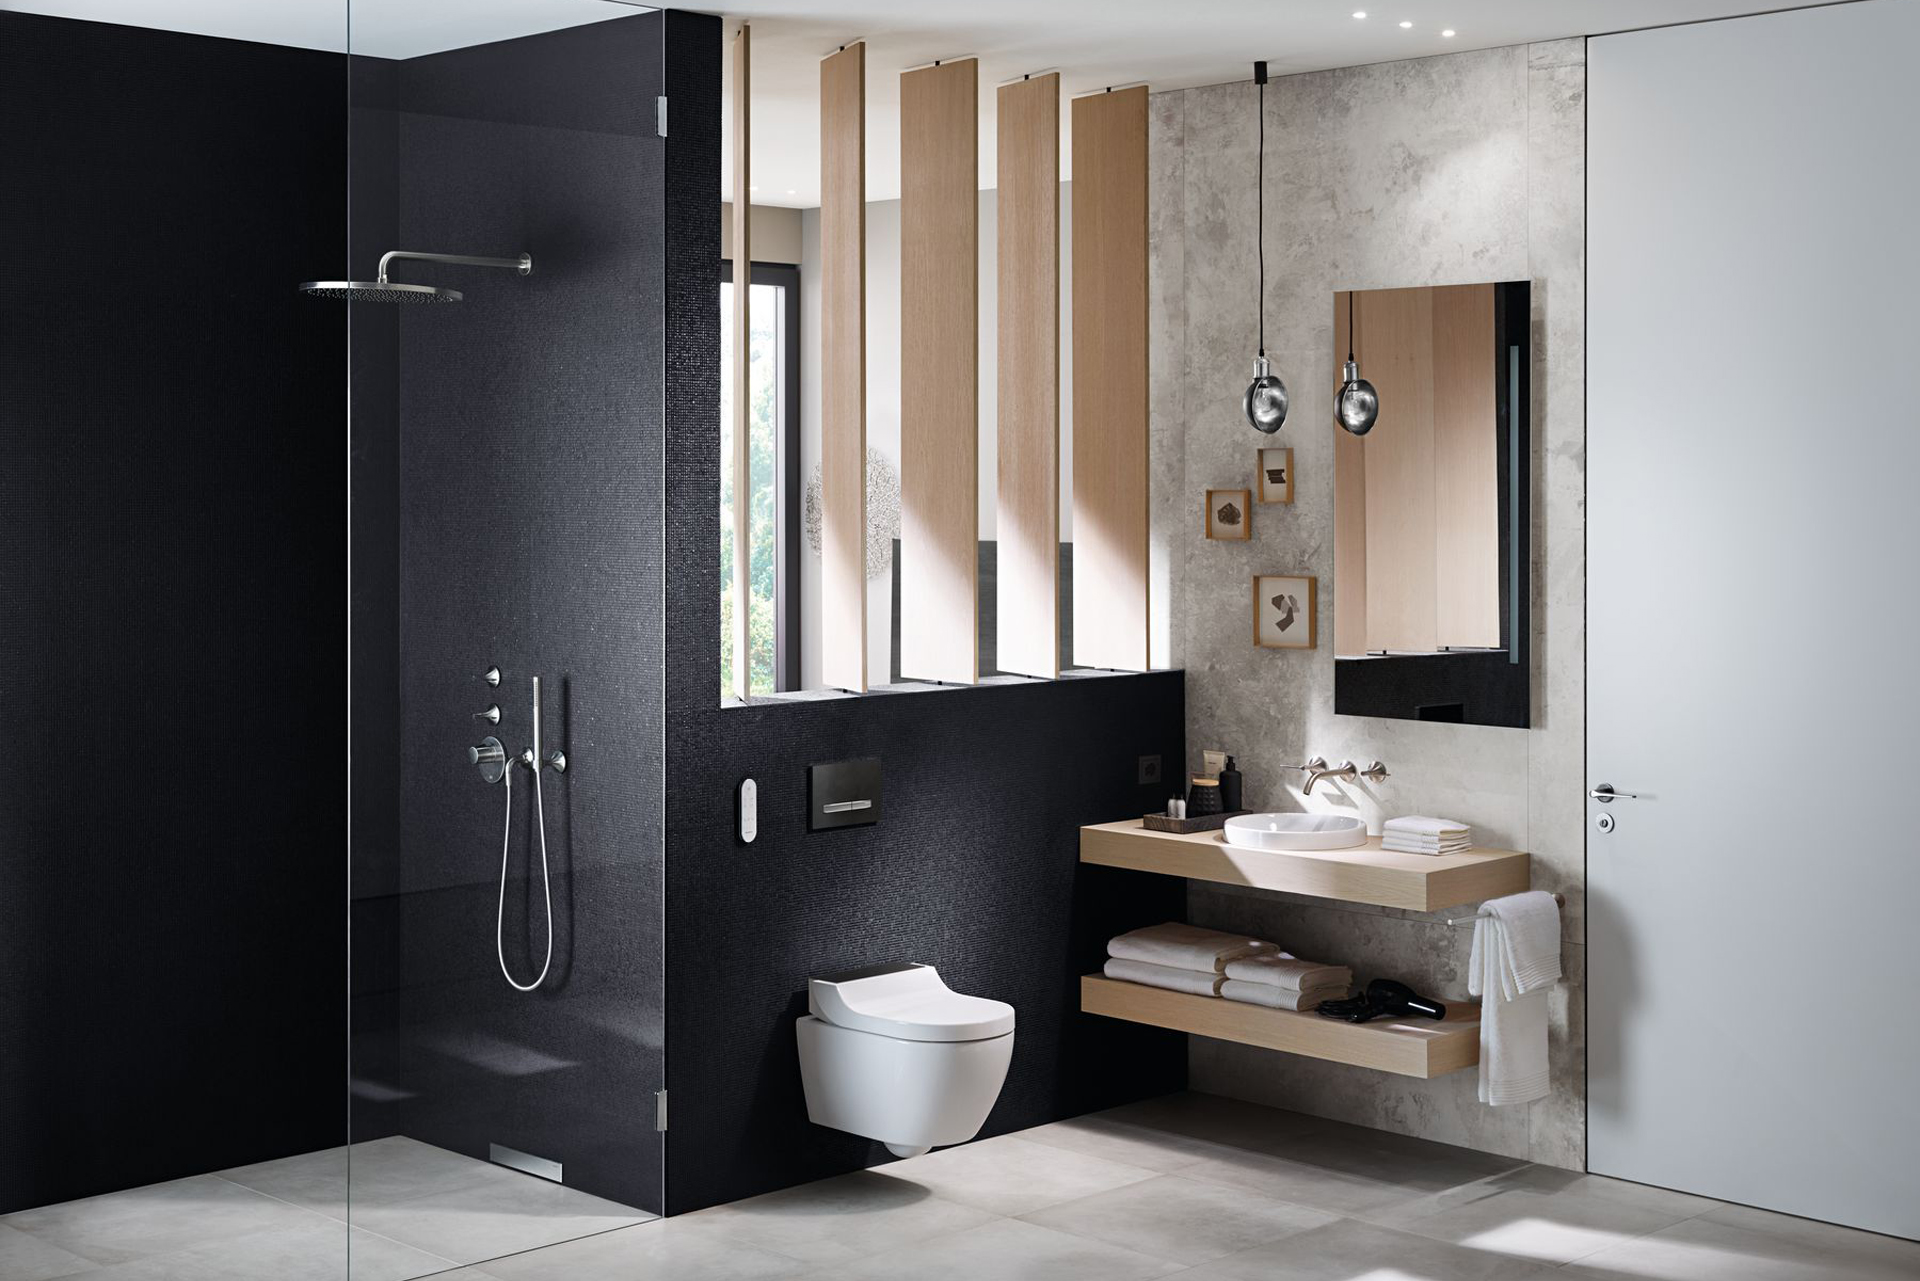 Komfort-Badezimmer mit bodenebener Dusche und Dusch-WC.